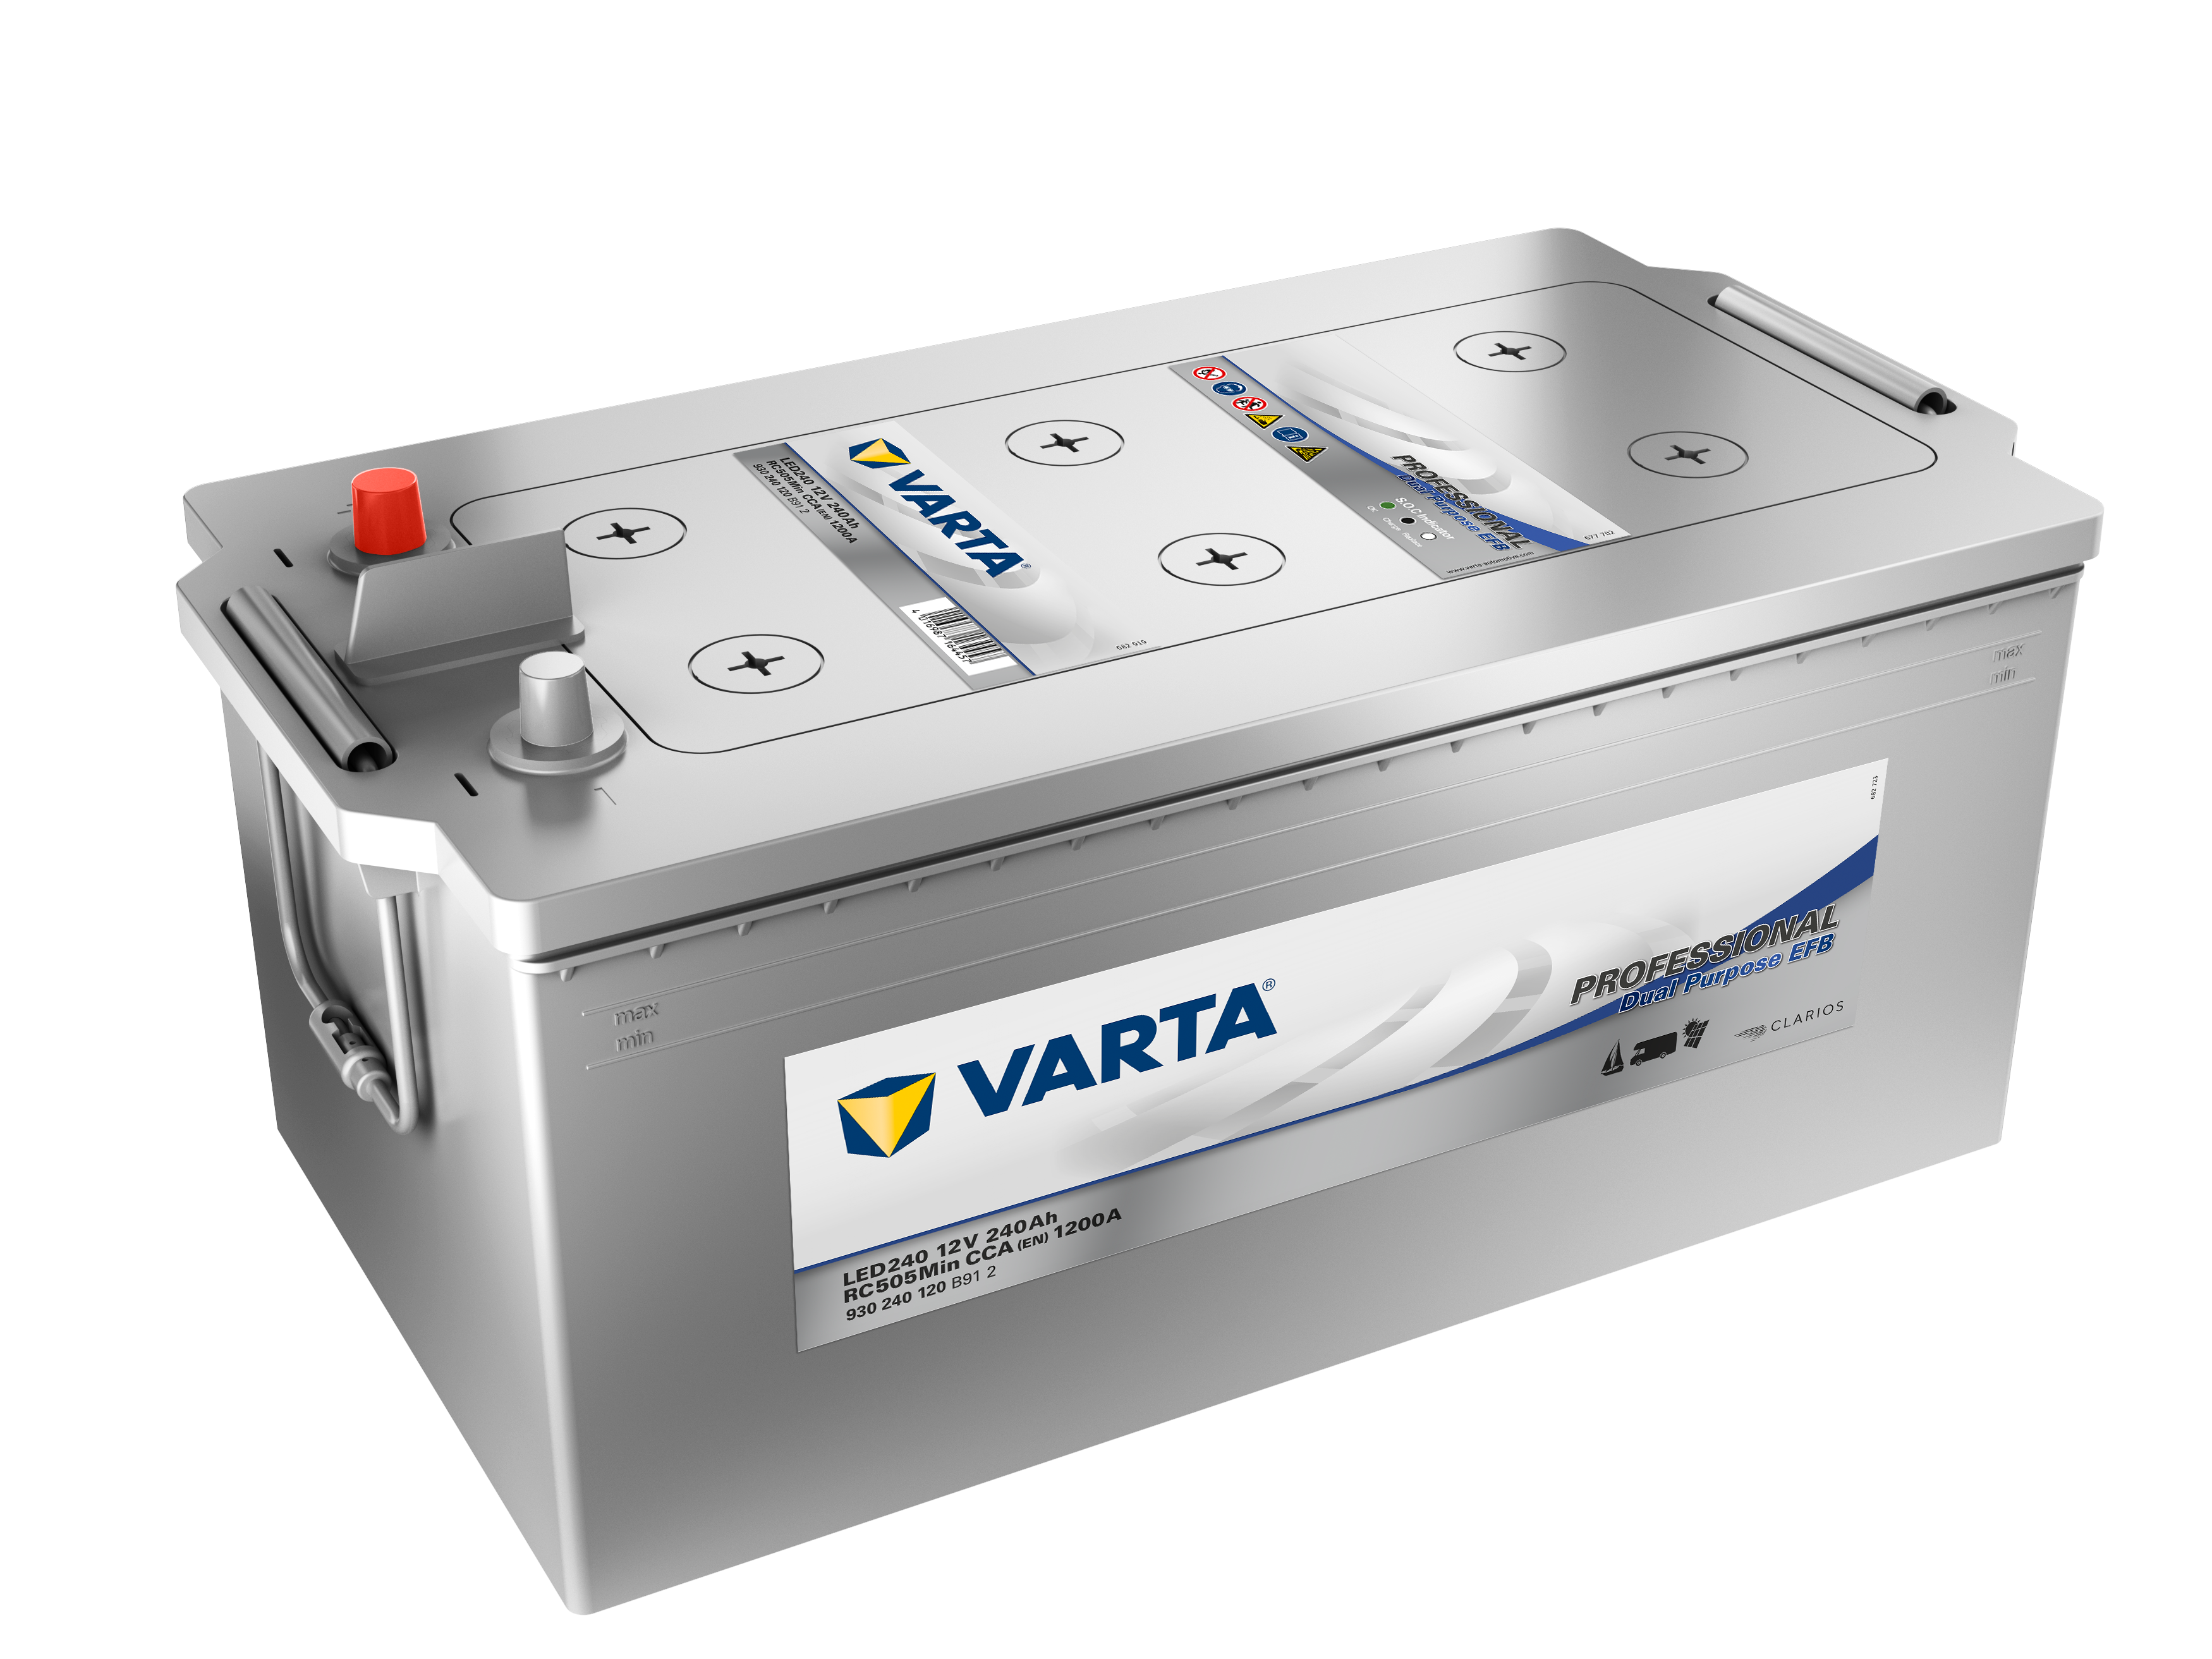 Varta Professional Dual Purpose EFB LED240